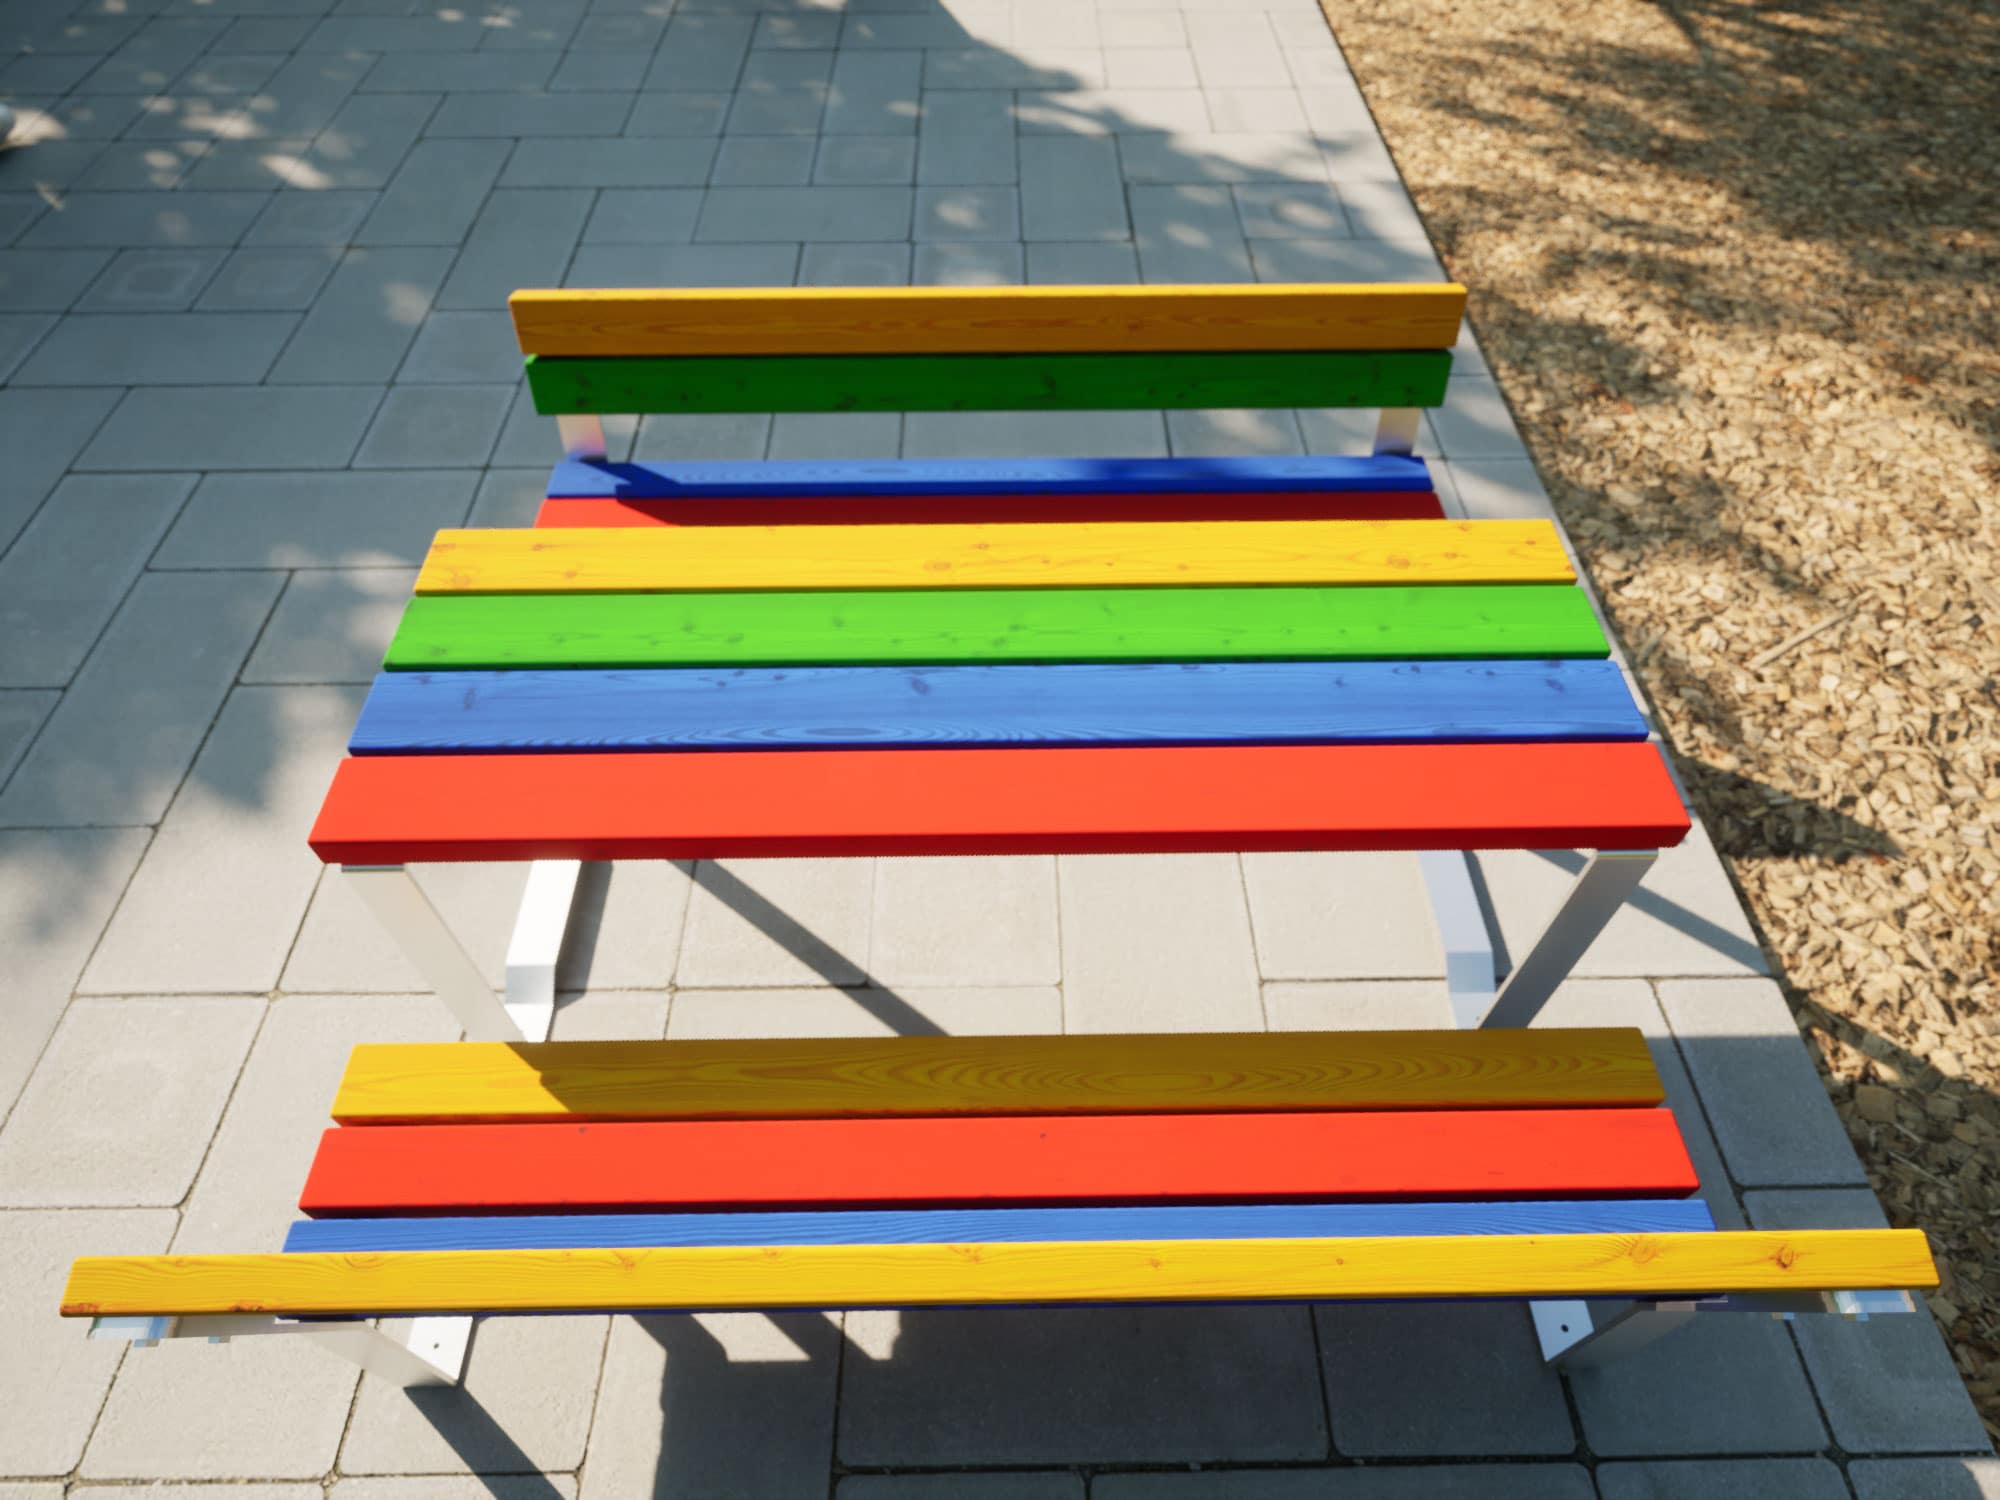 Bänke und Tische in bunten Farben für Kinder von Oben